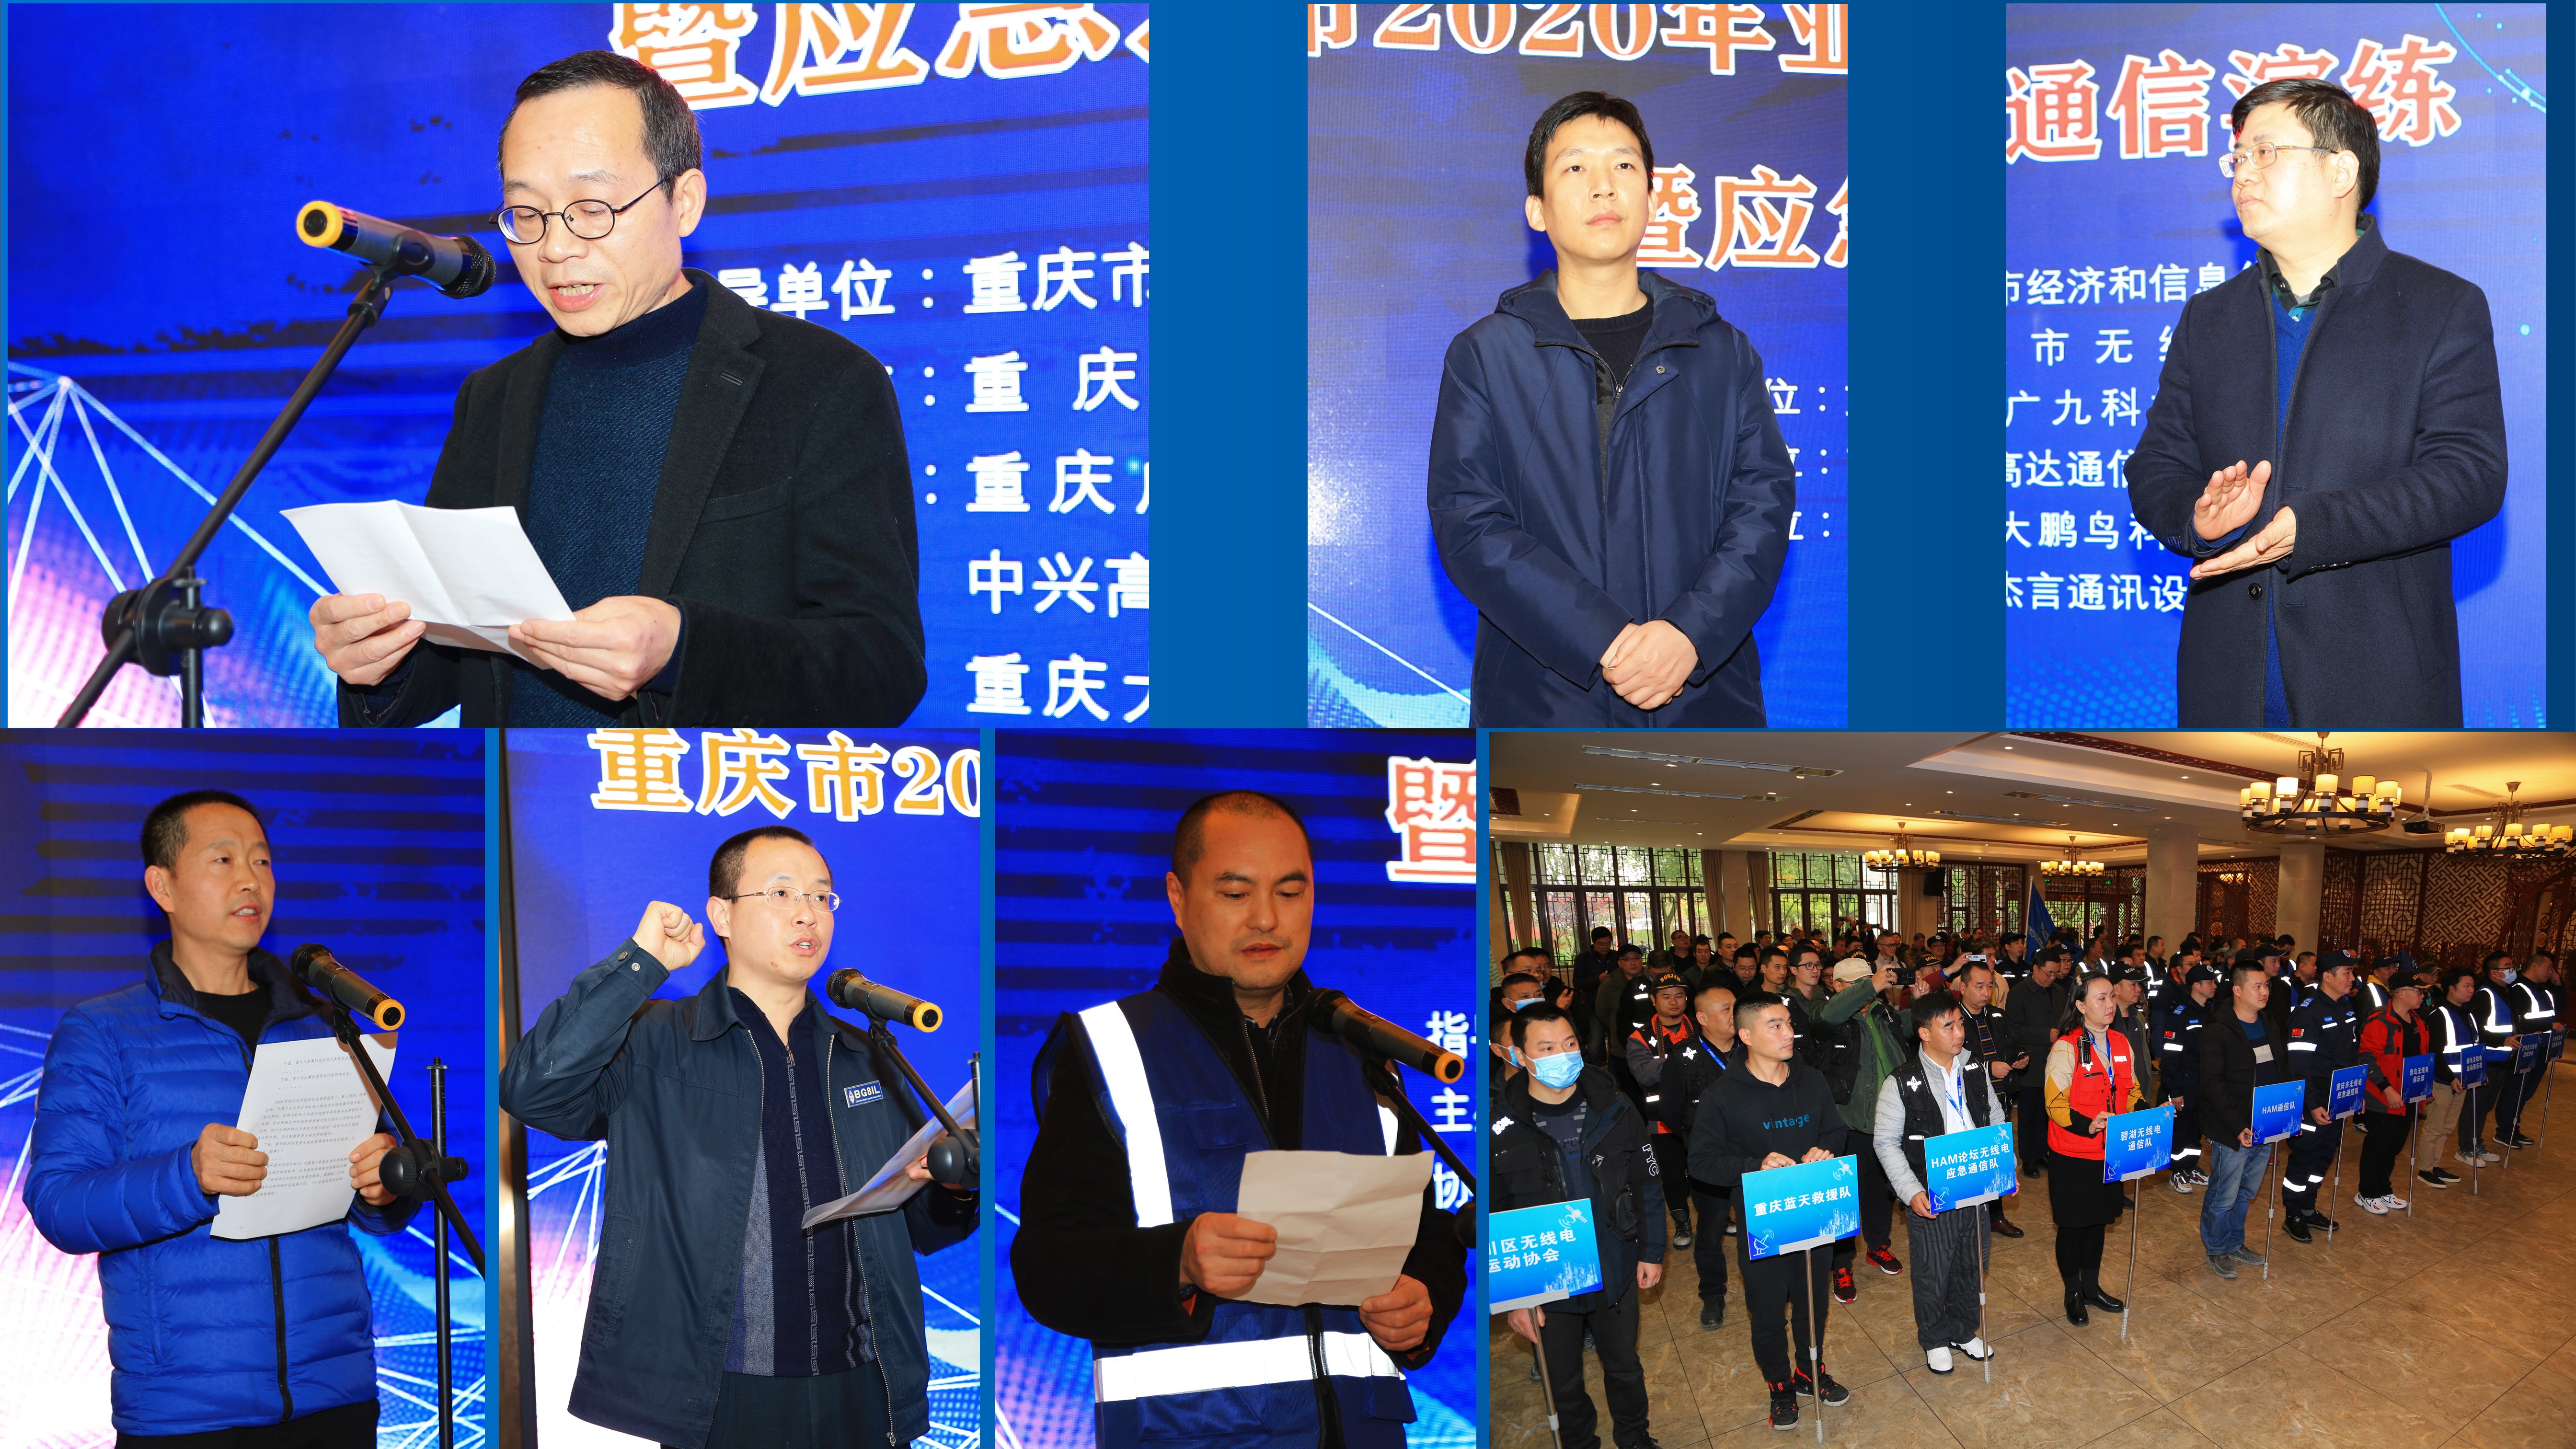 重庆市2020年业余无线电节庆祝活动暨